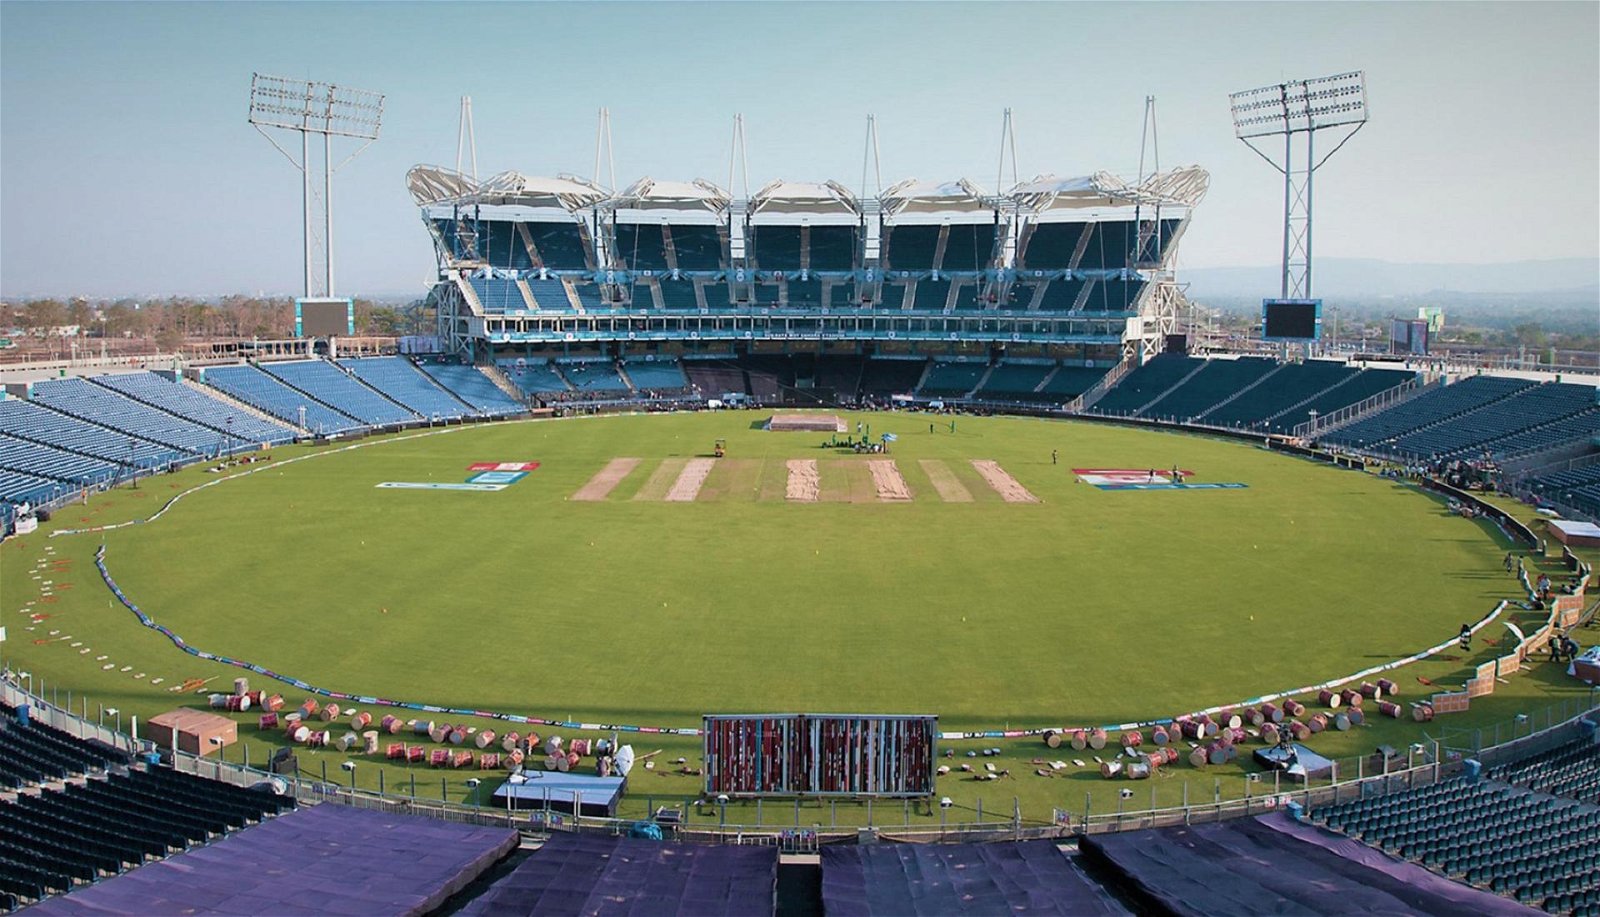 MCA Cricket Stadium in Pune